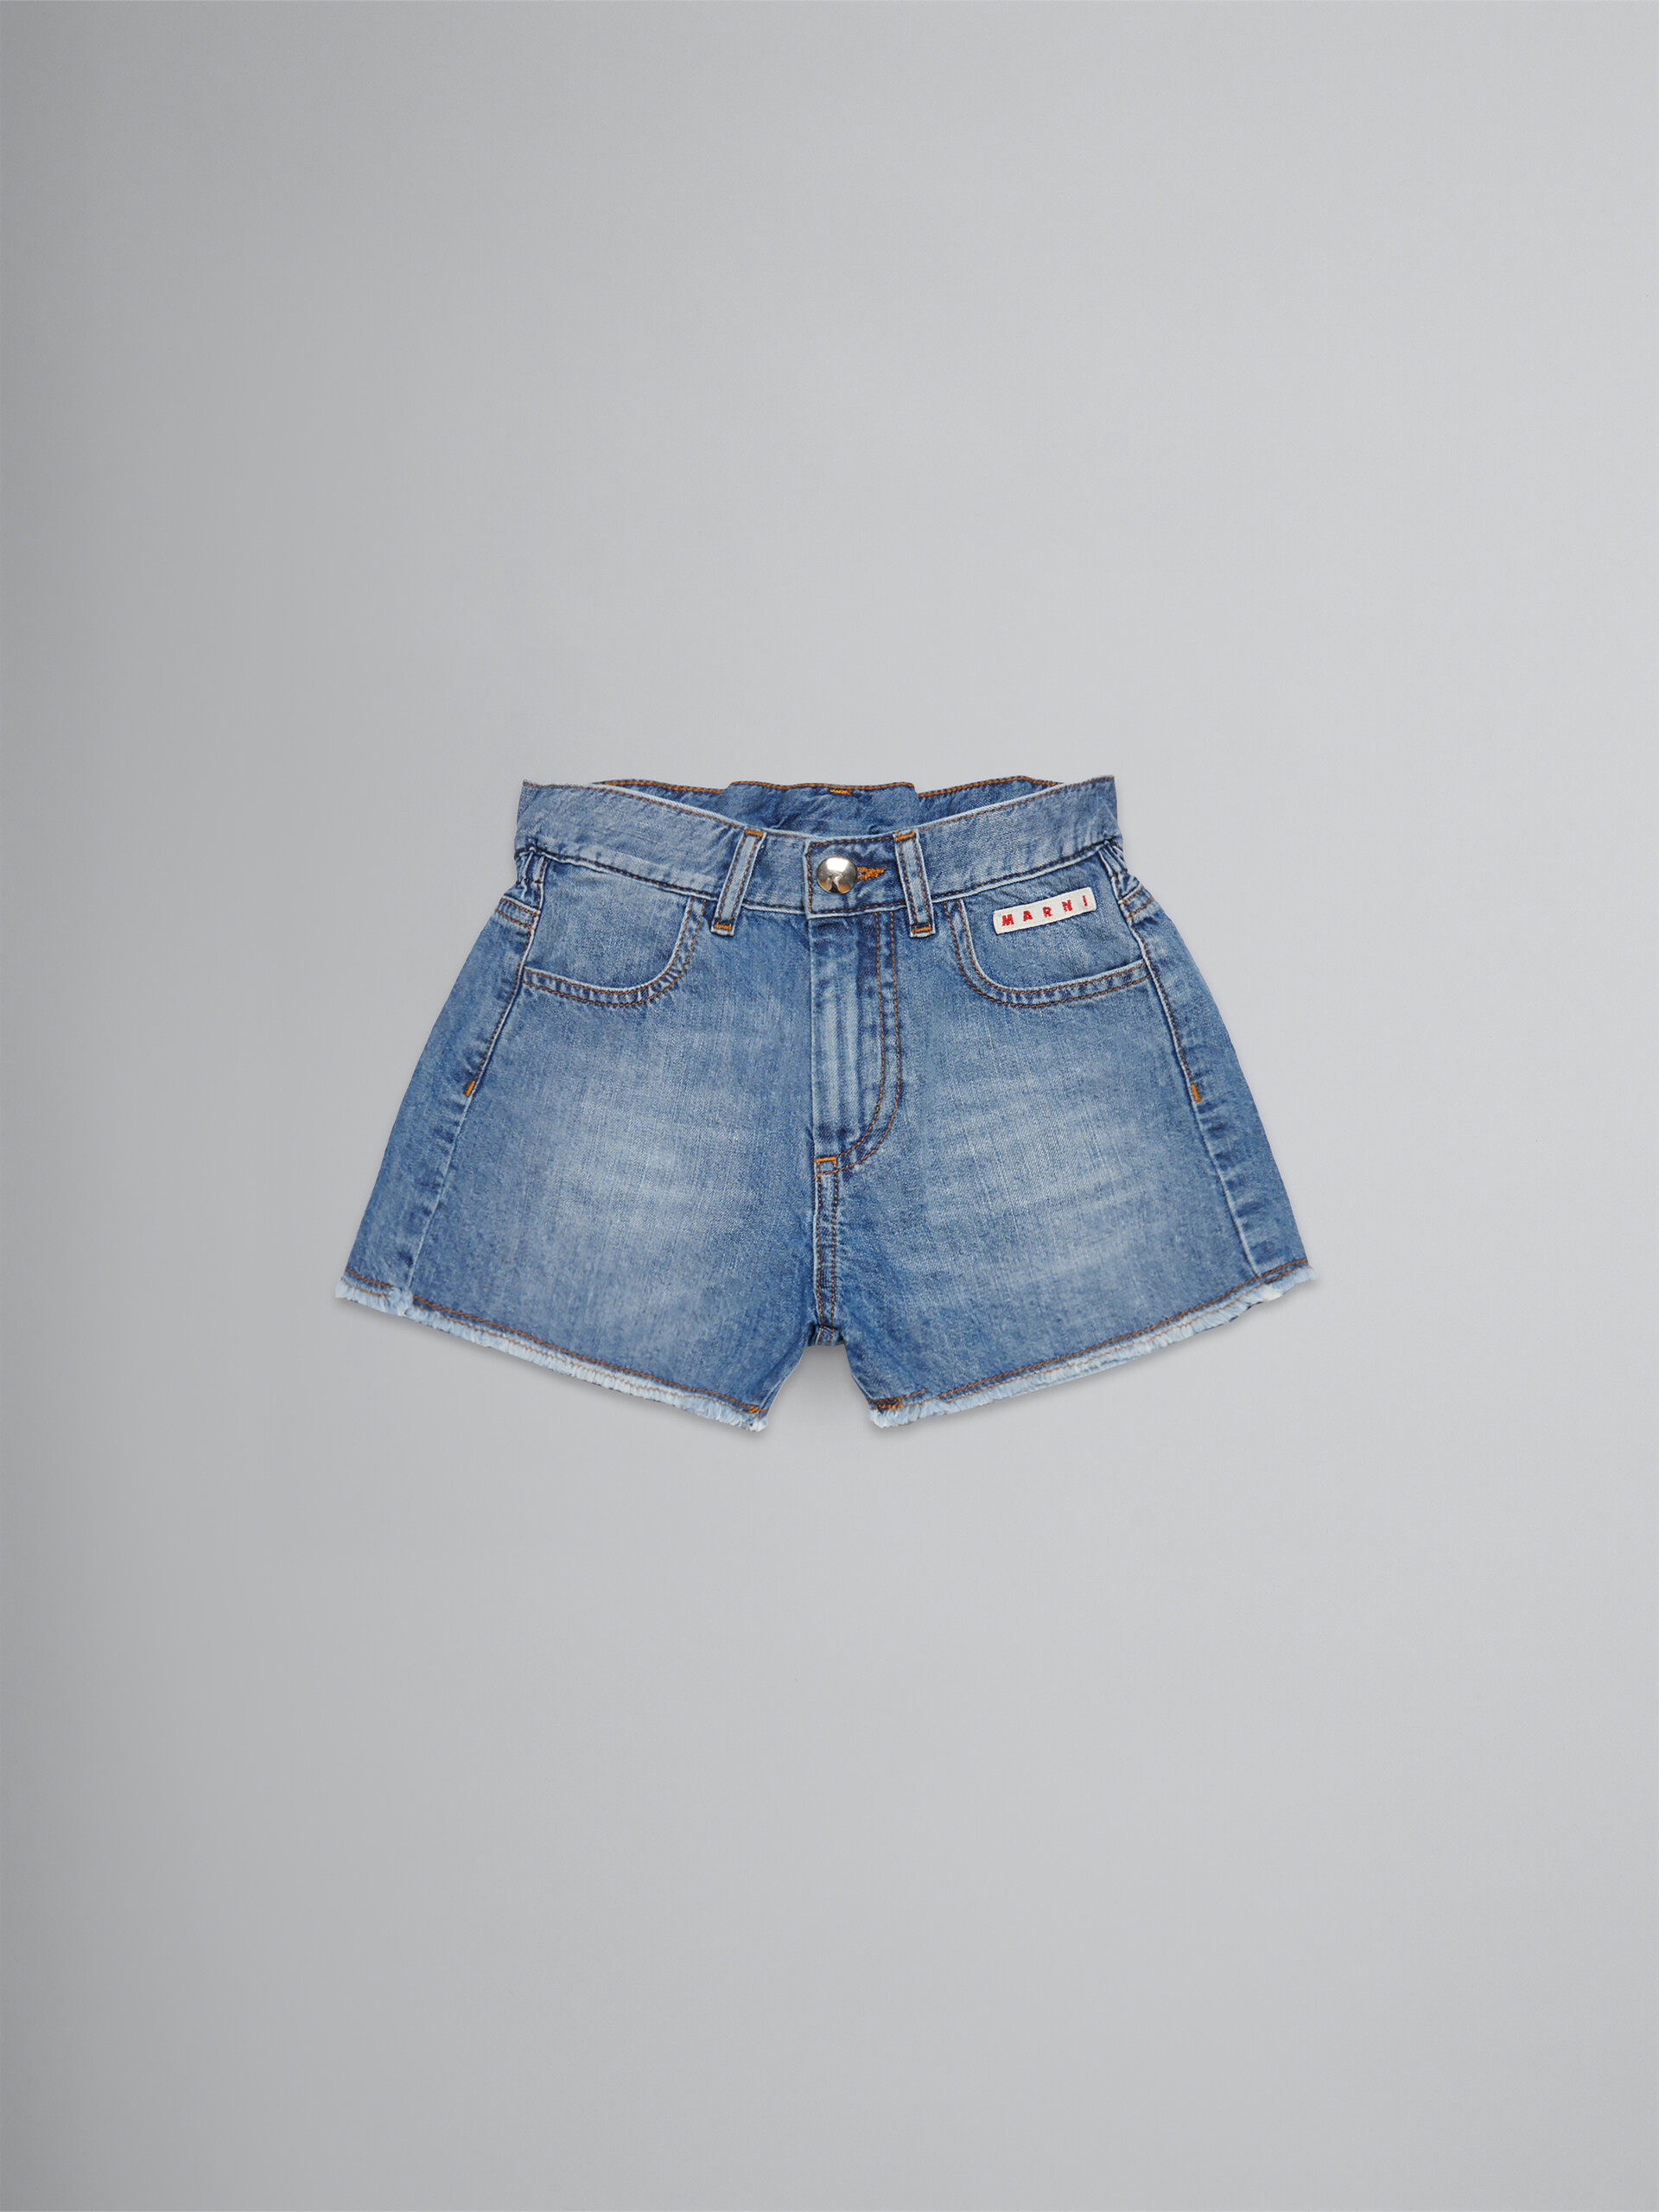 Denim-Shorts mit unverarbeiteten Rändern - Hosen - Image 1